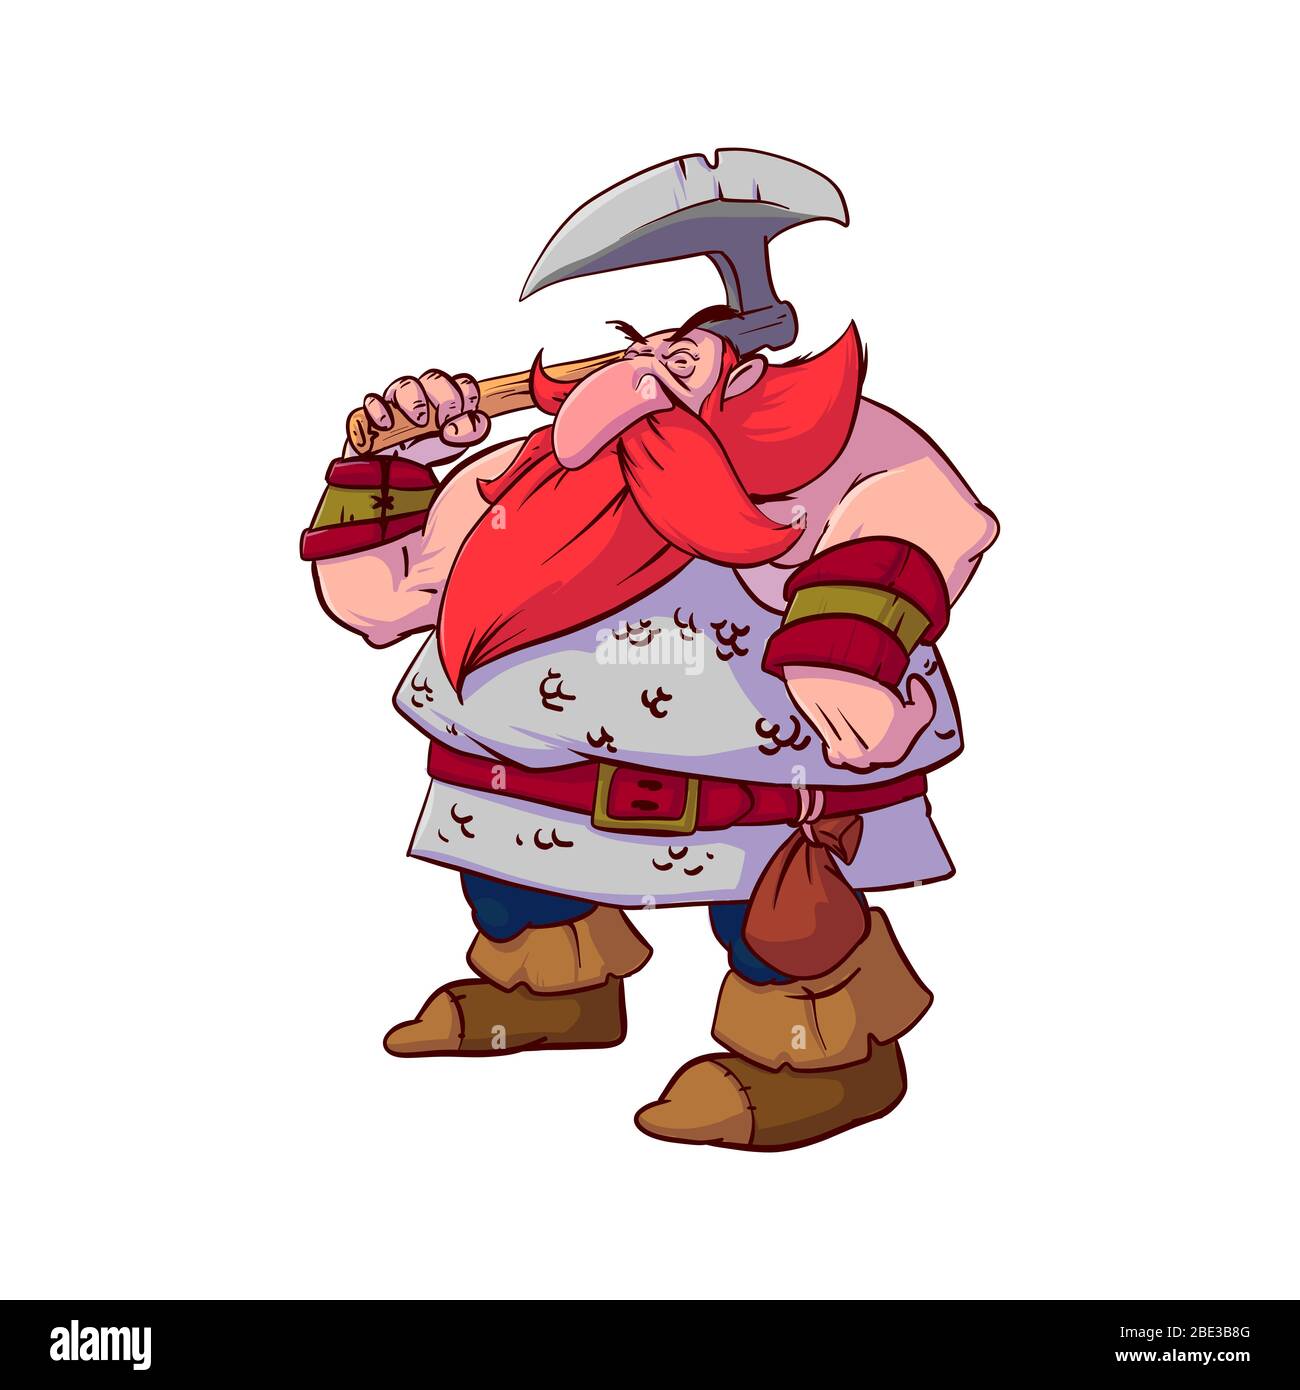 Illustration vectorielle colorée d'un guerrier nain de dessin animé, avec cheveux rouges et barbe, portant une armure de chaîne, armé d'une hache de combat géante. Illustration de Vecteur